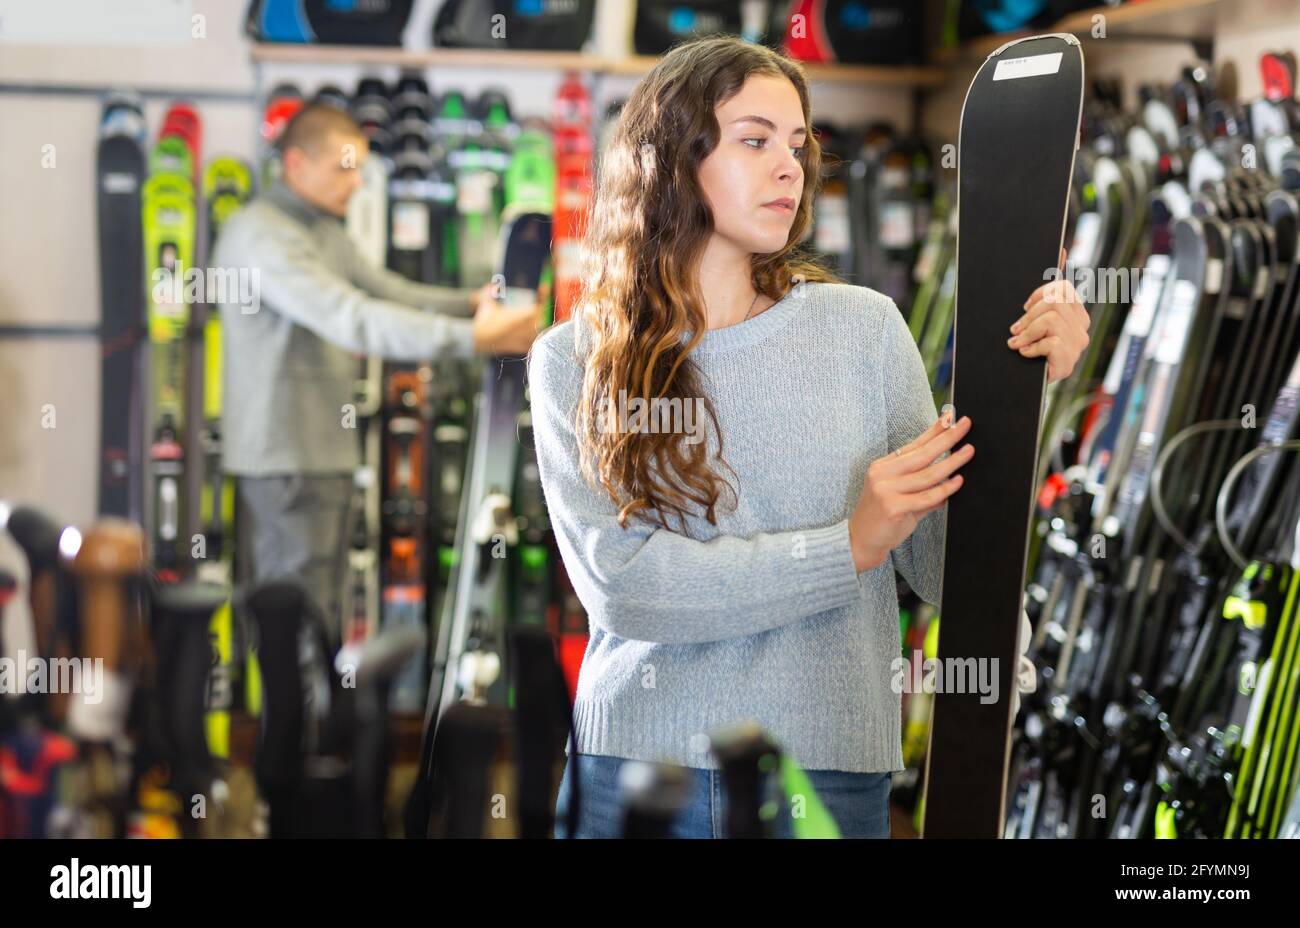 Un homme et une femme choisissent de nouveaux modèles de skis dans le magasin d'équipement de ski Banque D'Images